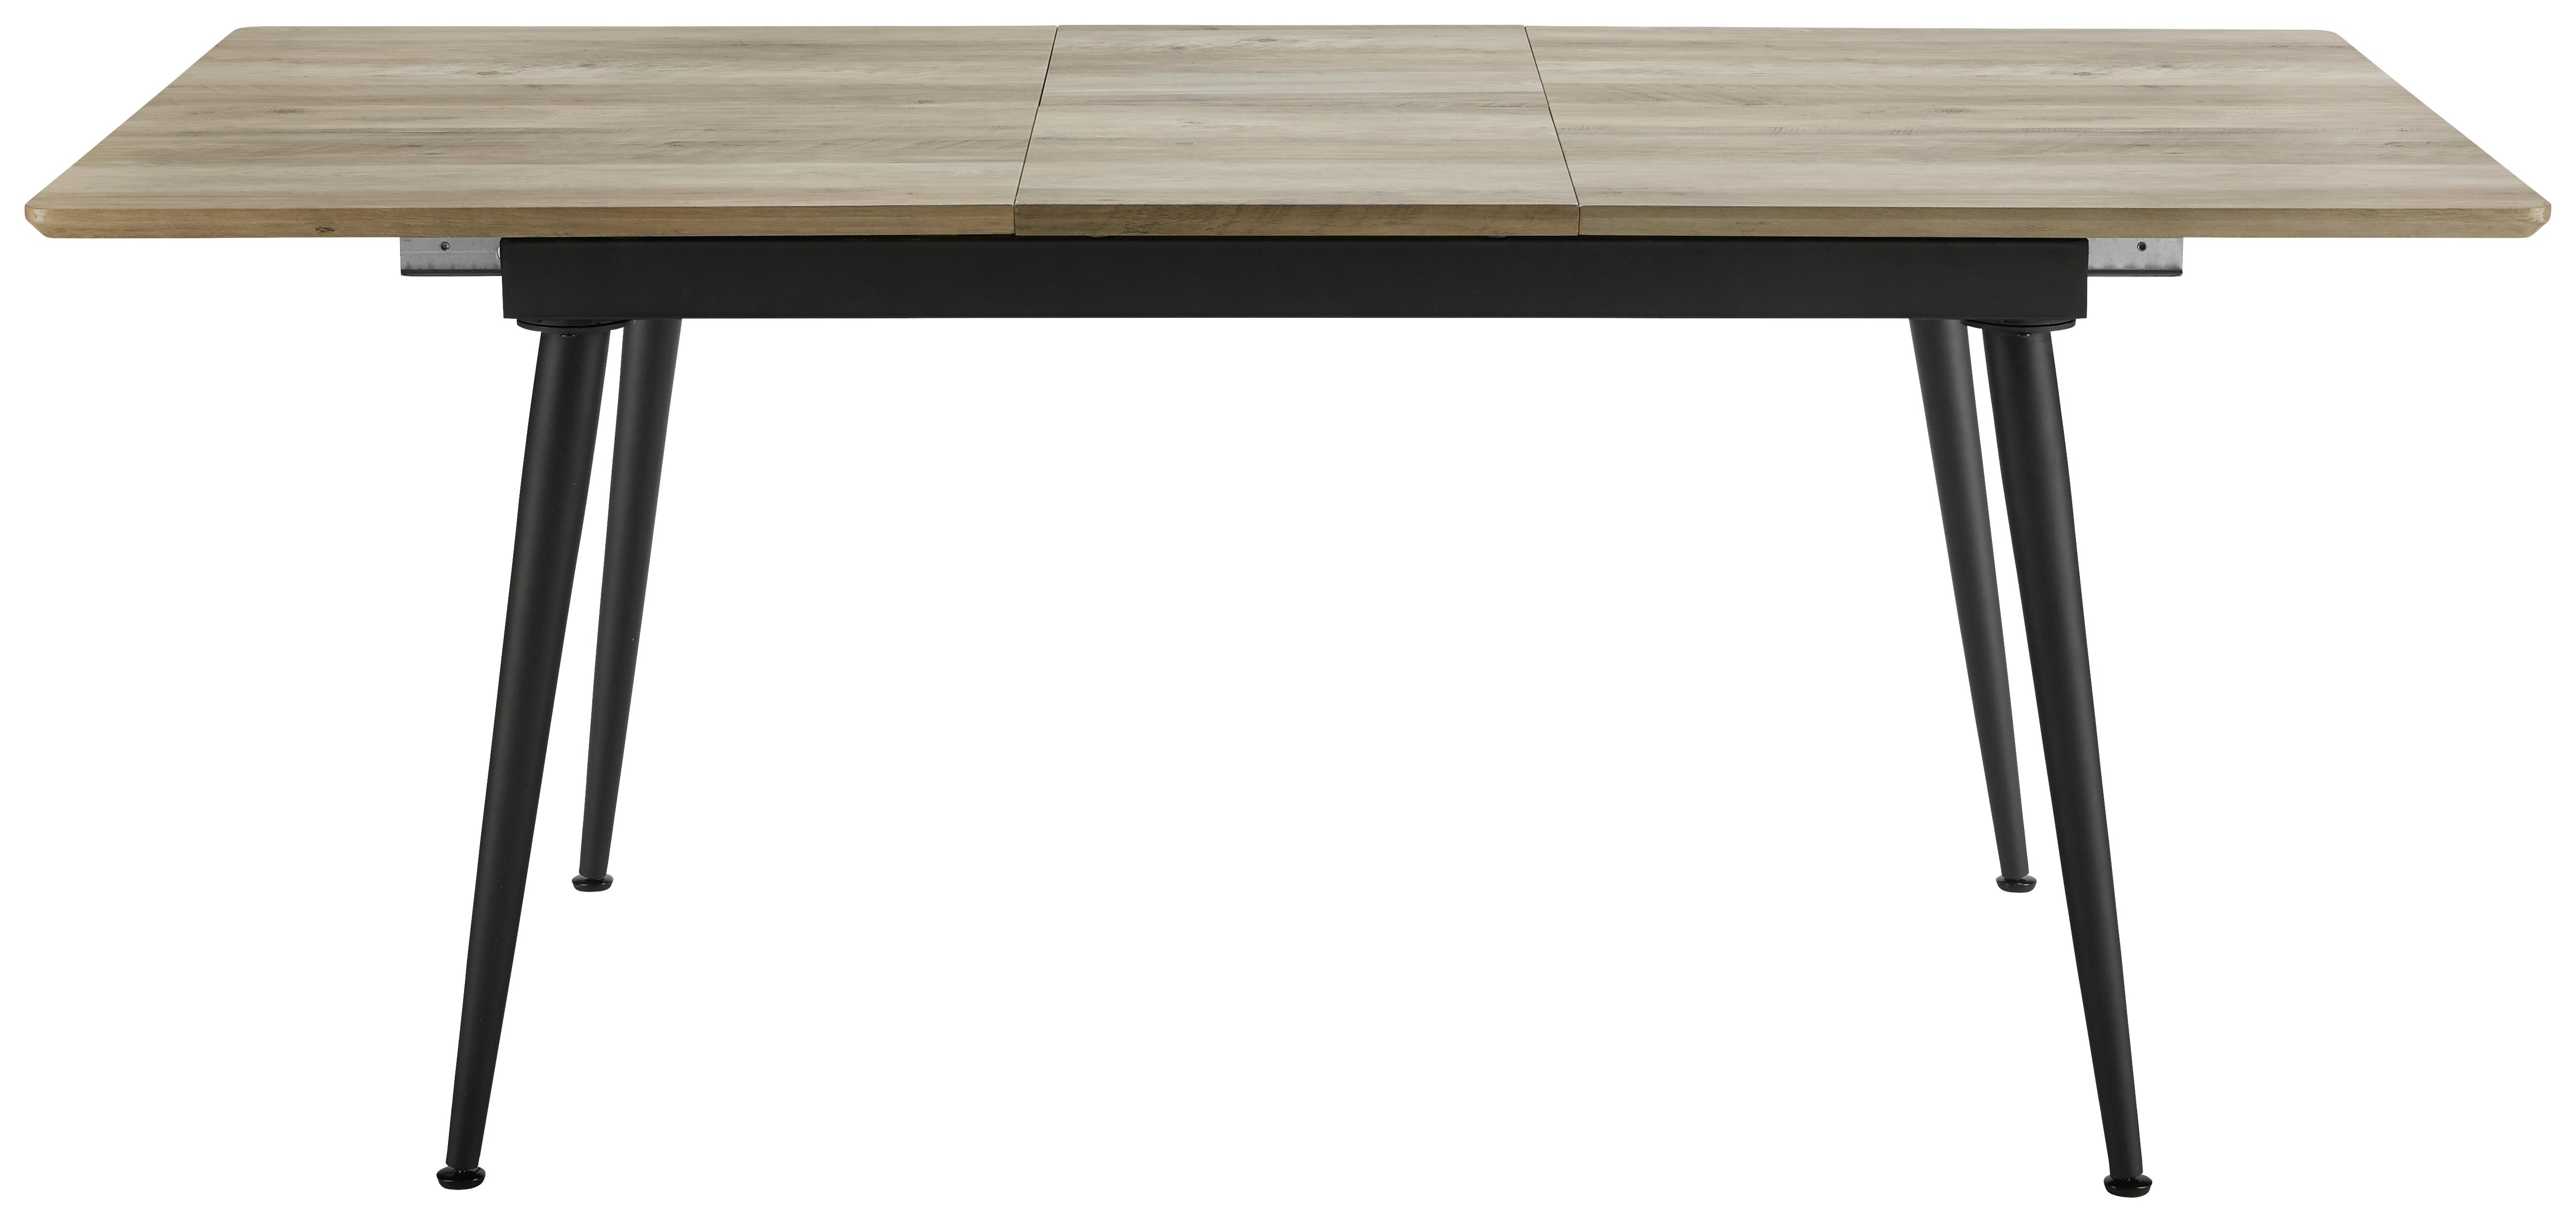 Rozkládací Stůl Vivian 140-180x90 Cm - černá/barvy dubu, Moderní, kov/dřevo (140-180/90/76cm) - Modern Living